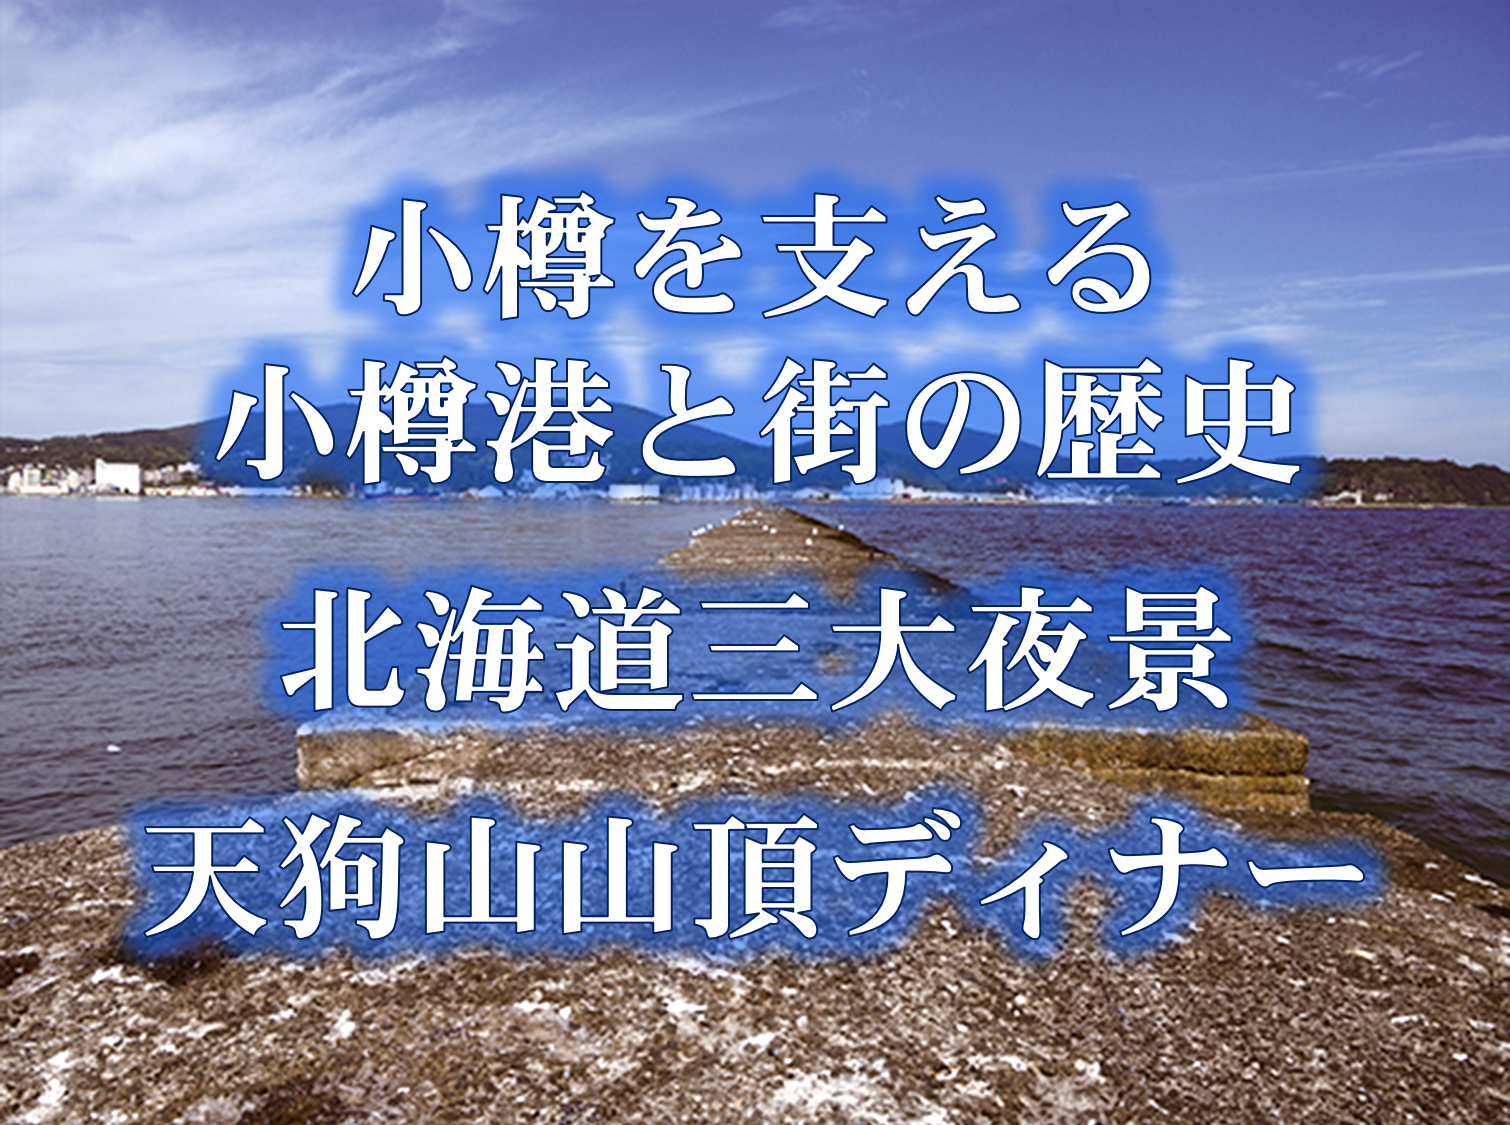 〈どうみん割対象〉小樽を支える小樽港と街の歴史・北海道三大夜景・天狗山山頂ディナー